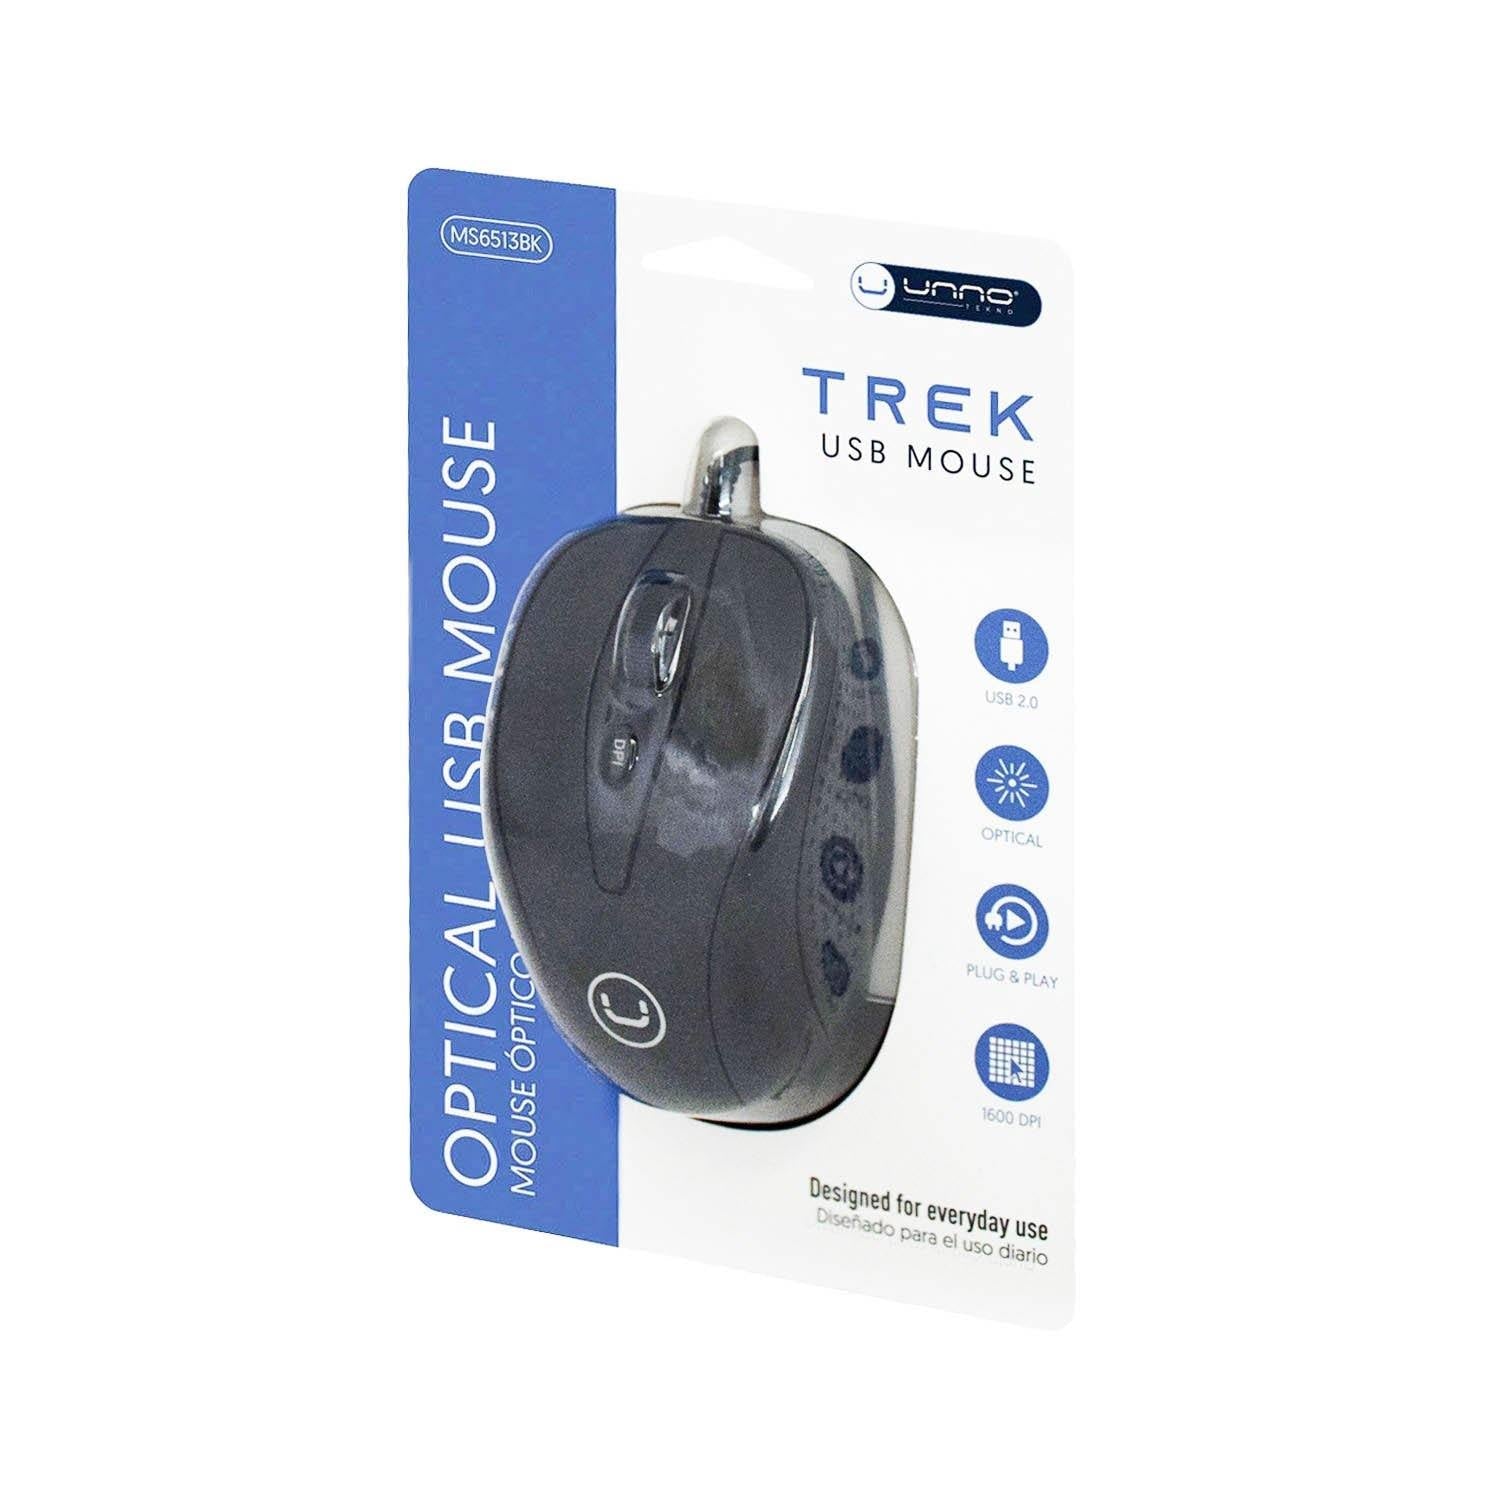 TREK USB MOUSE - ShopLibertyStore.com